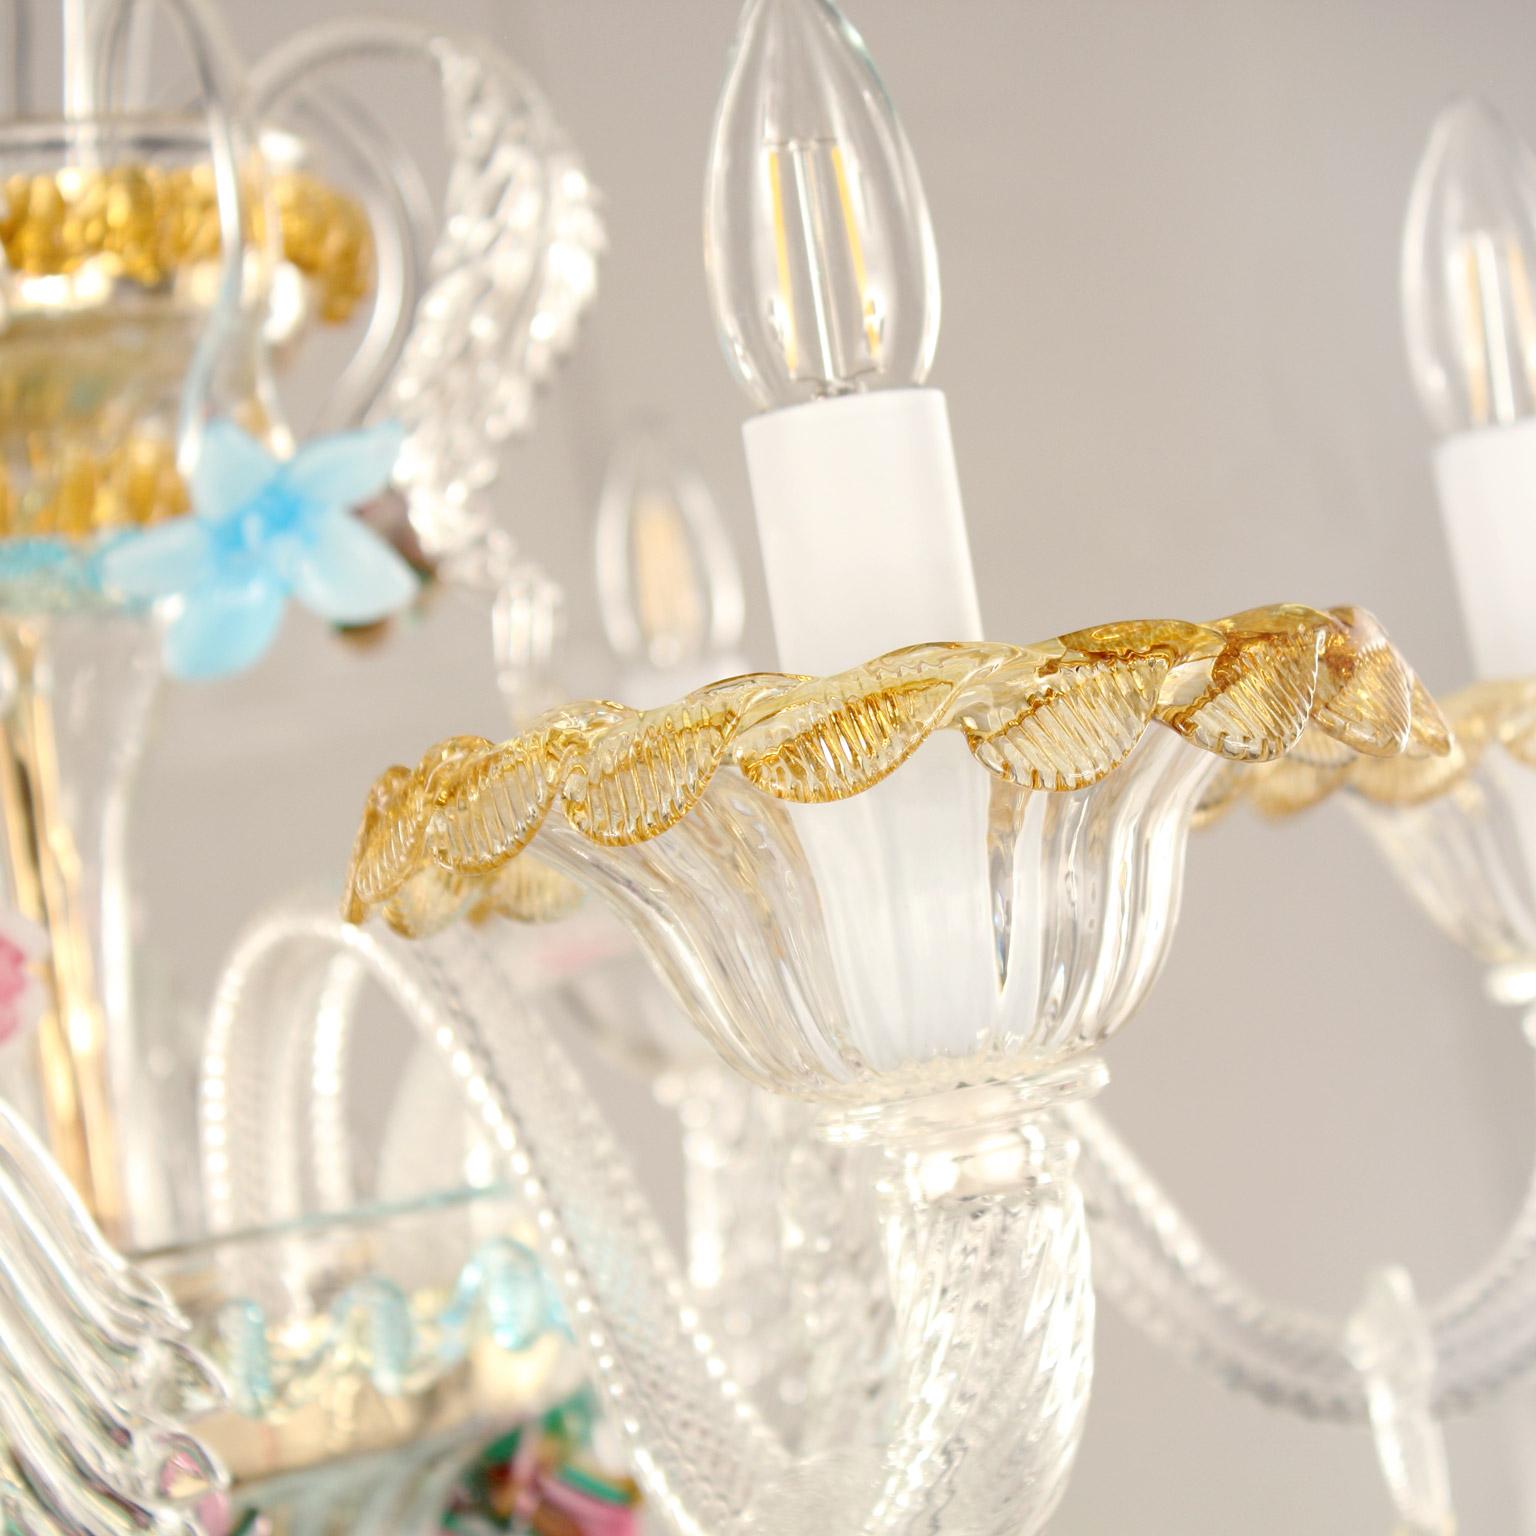 Lustre Toffee hauteur 95, 12 lumières, cristal de Murano, détails polychromes par Multiforme.
Le lustre artistique en verre caramel est une œuvre d'éclairage élégante et délicate, colorée dans des tons pastel. La structure est une combinaison de